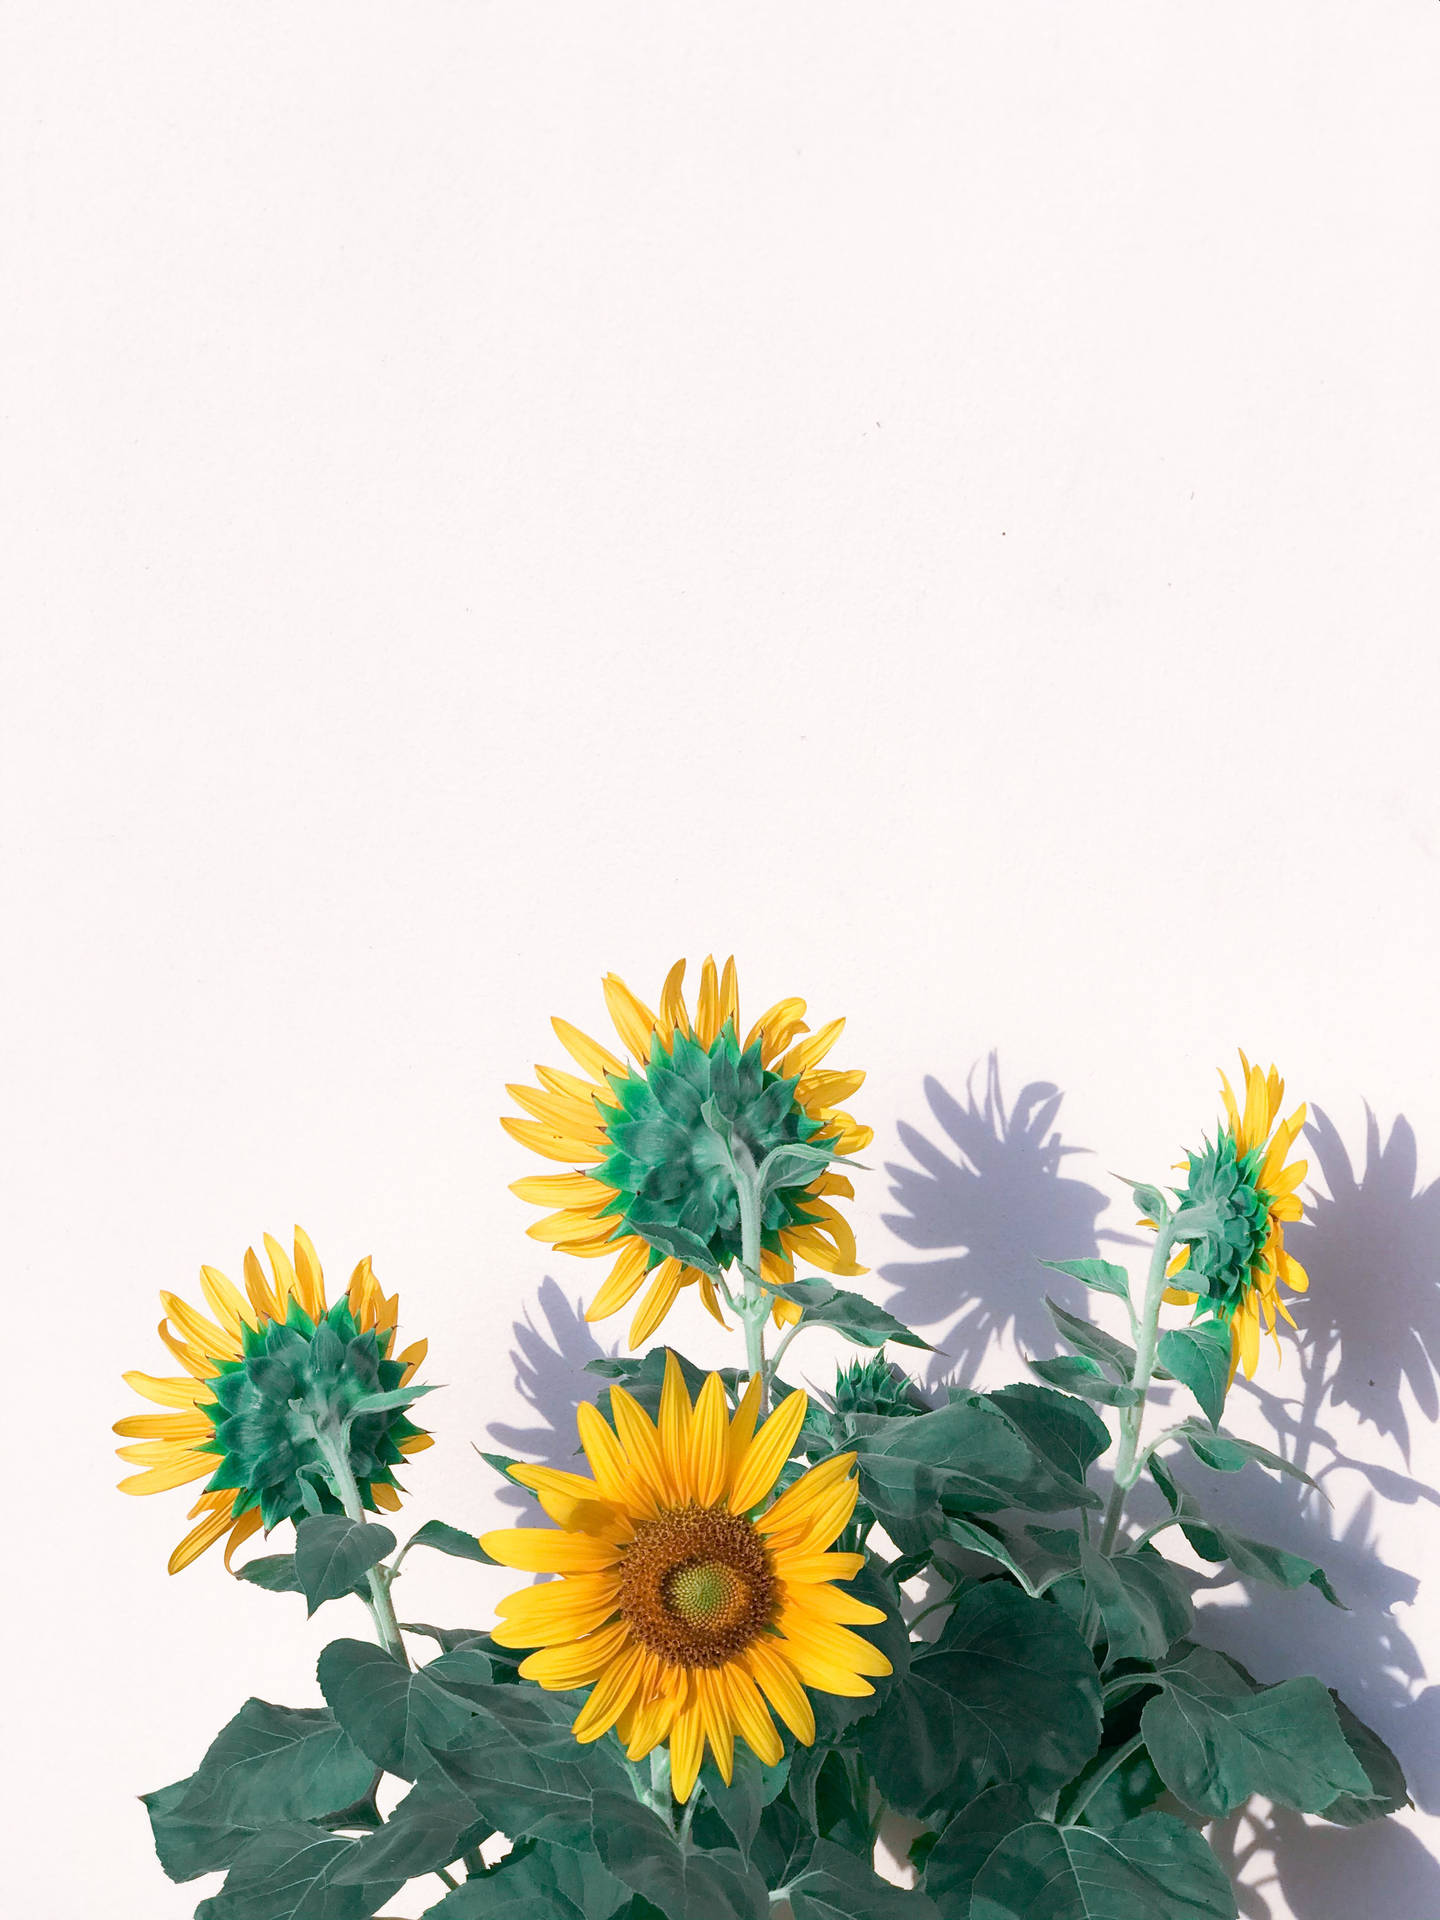 Sunflower 3024X4032 wallpaper